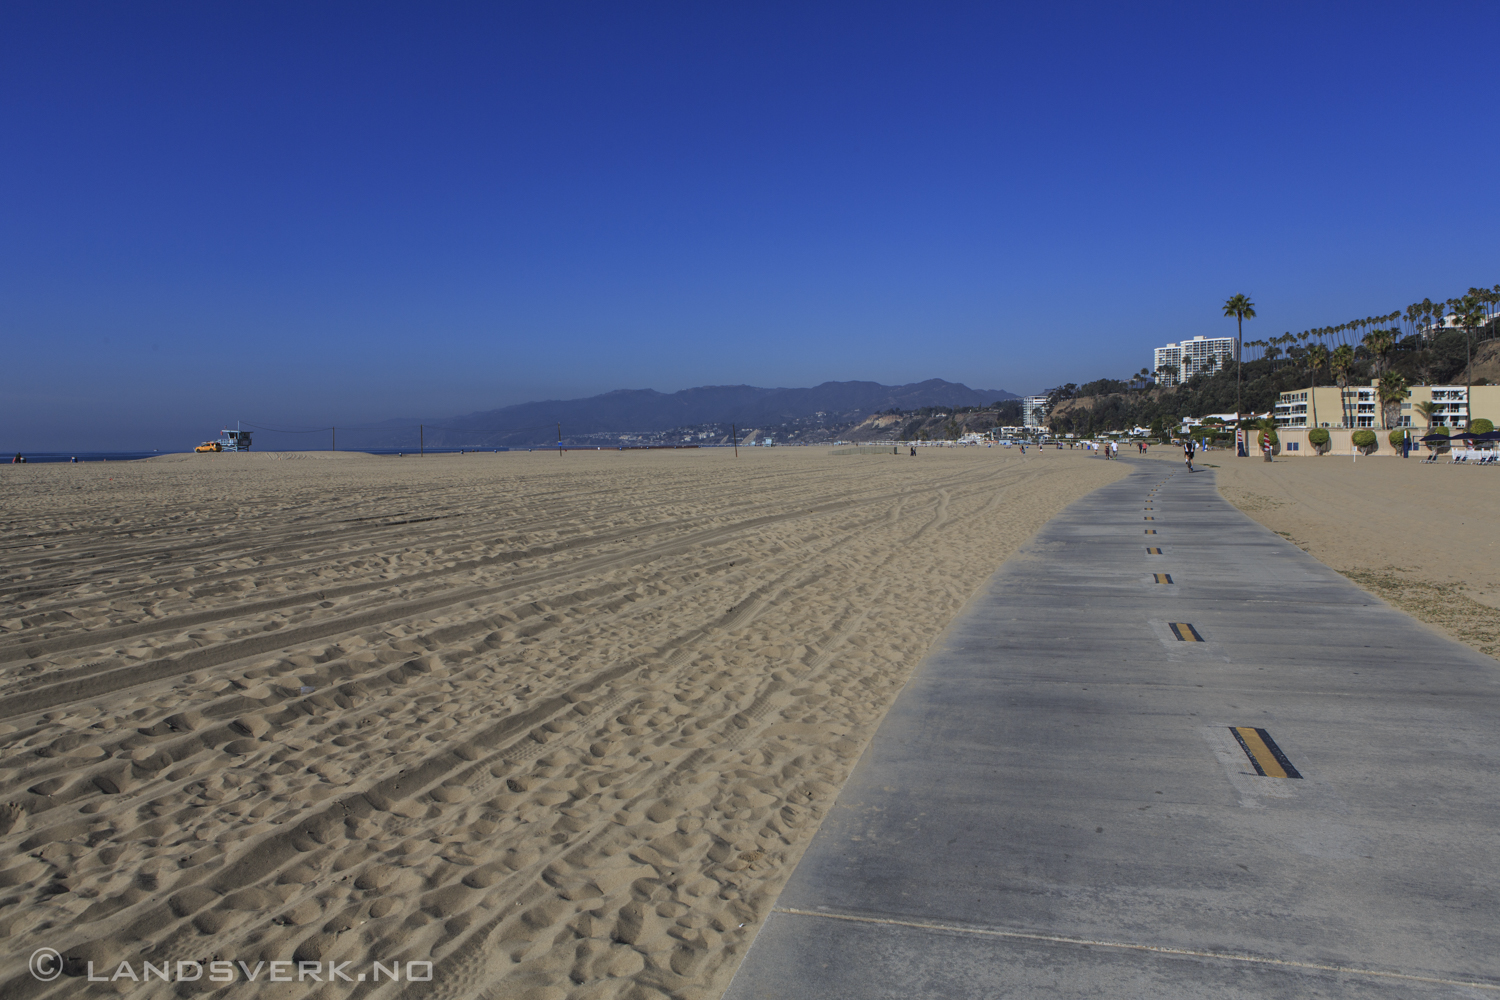 Santa Monica, California.

(Canon EOS 5D Mark III / Canon EF 24-70mm f/2.8 L USM)